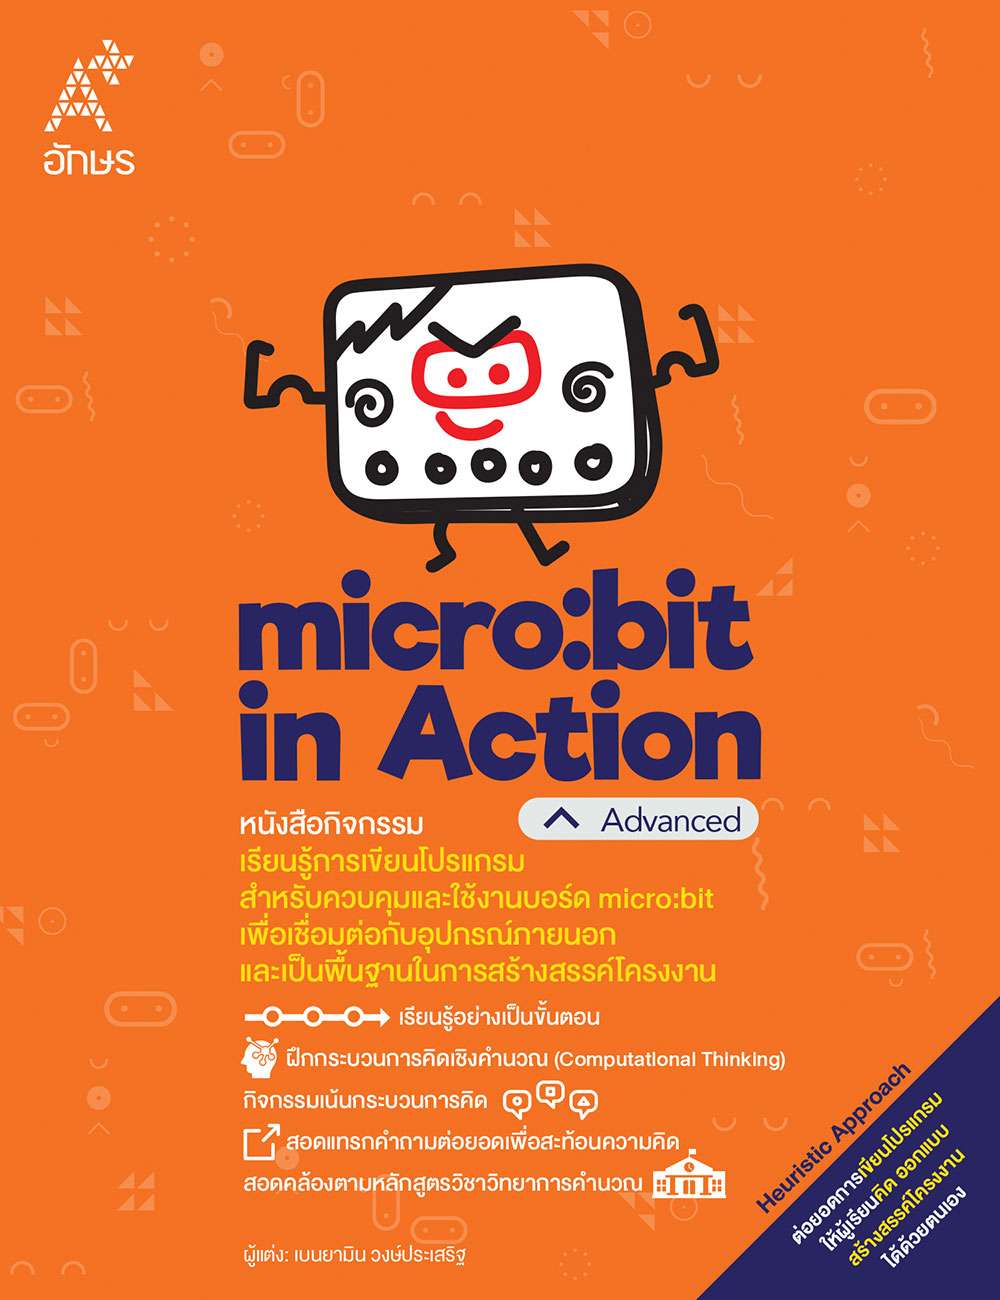 หนังสือกิจกรรม micro:bit in Action ระดับ Advanced